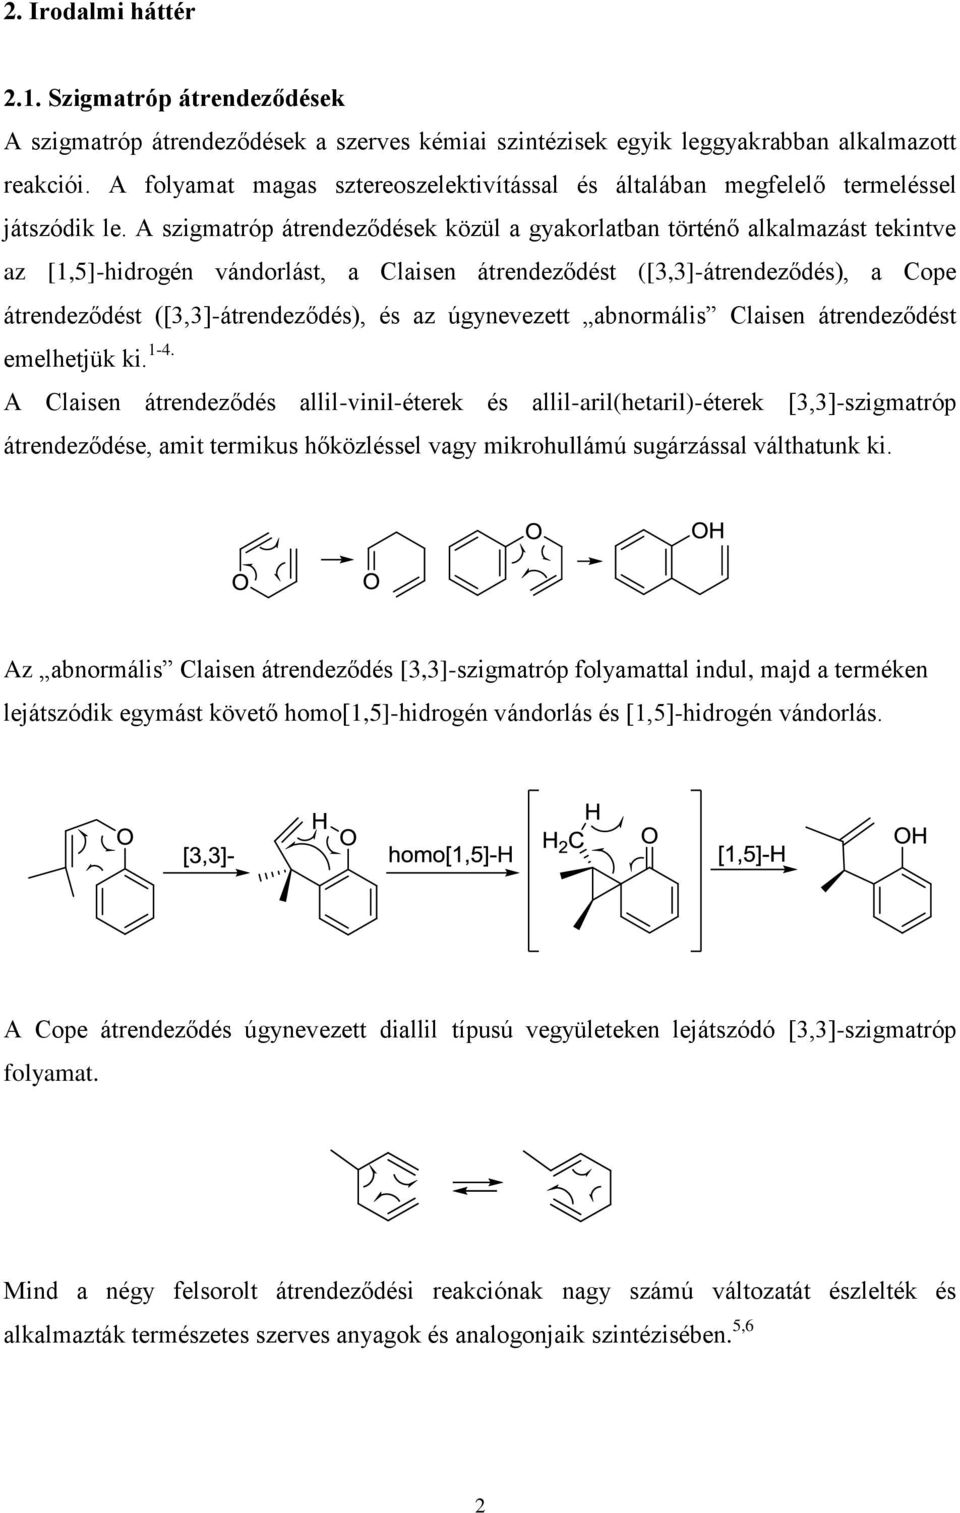 A szigmatróp átrendeződések közül a gyakorlatban történő alkalmazást tekintve az [1,5]-hidrogén vándorlást, a Claisen átrendeződést ([3,3]-átrendeződés), a Cope átrendeződést ([3,3]-átrendeződés), és